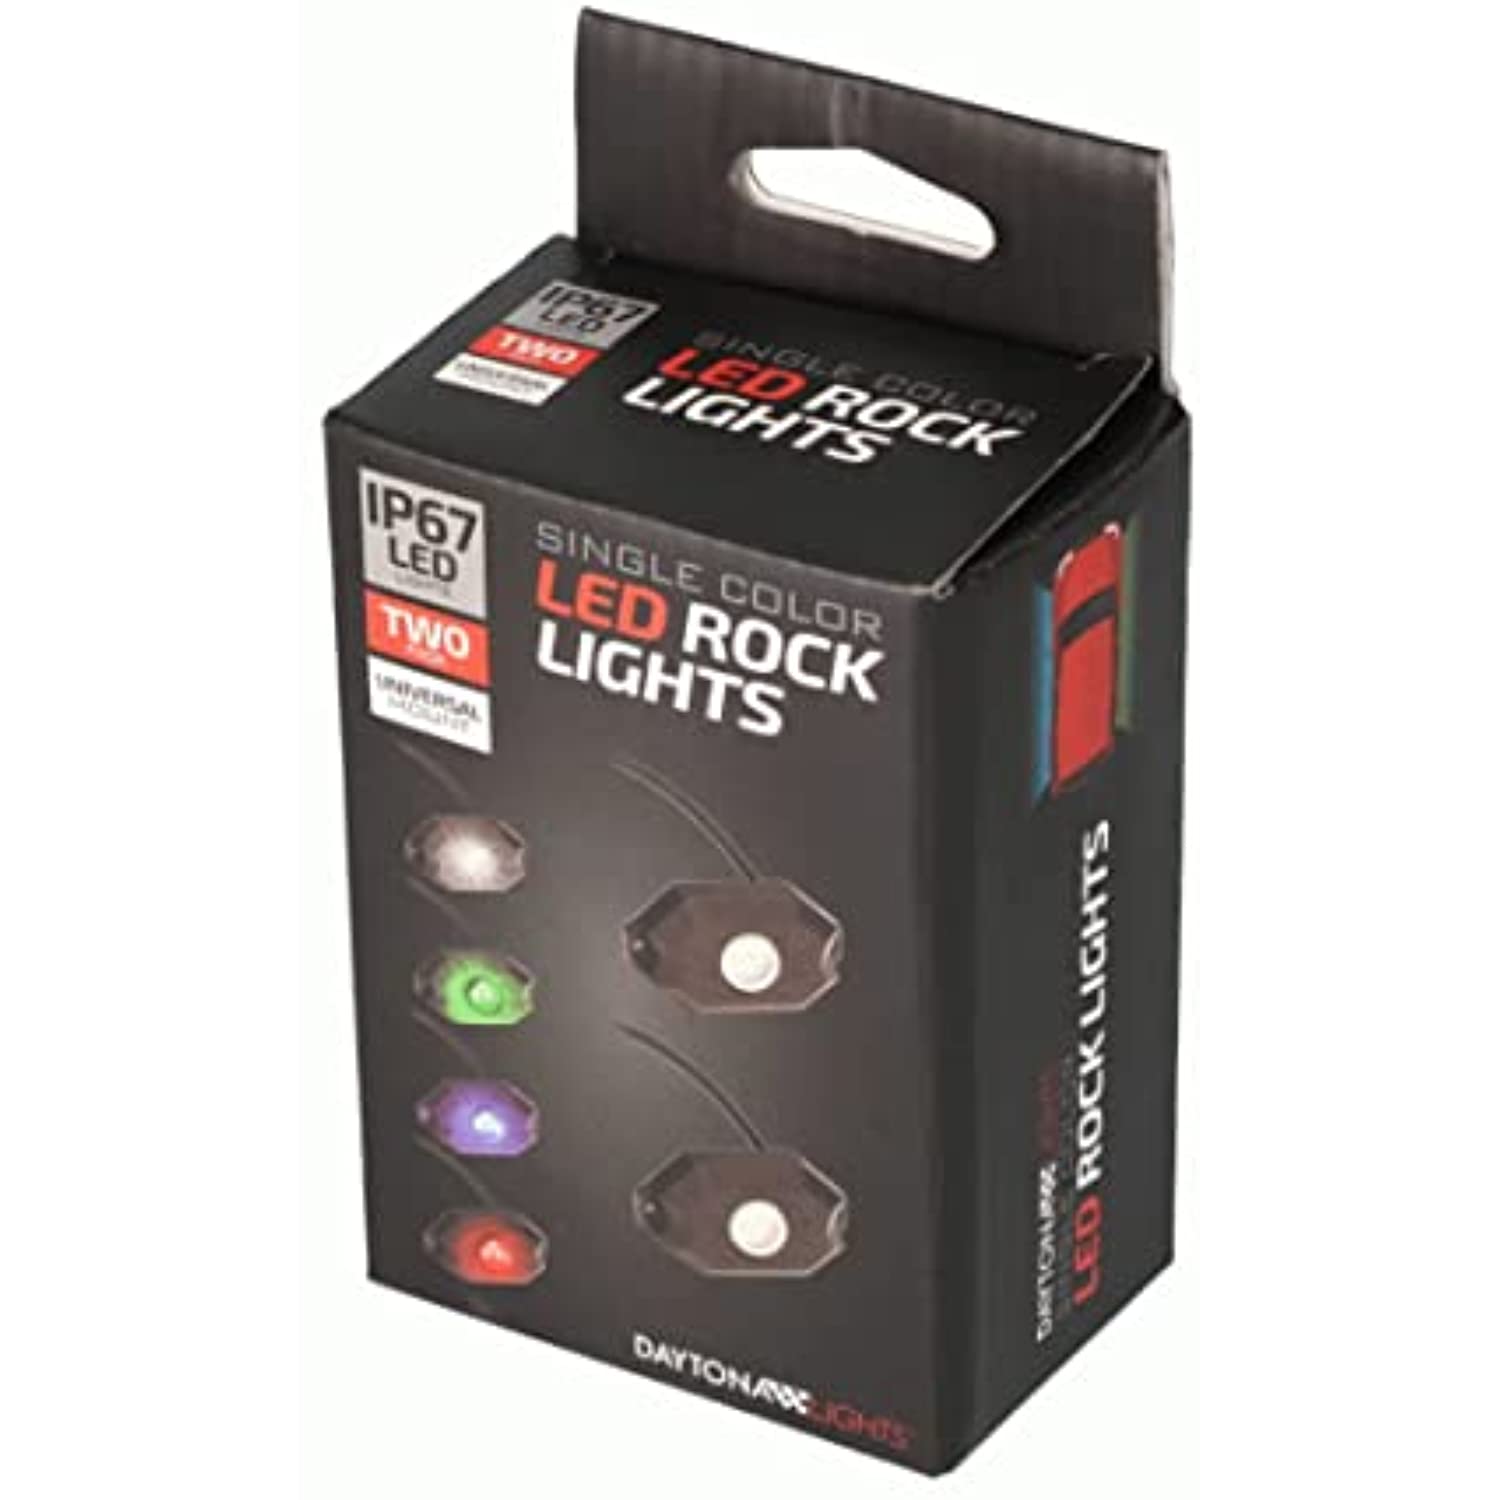 METRA - Red Rock Lights - 2-Pack (DL-ROCKR)